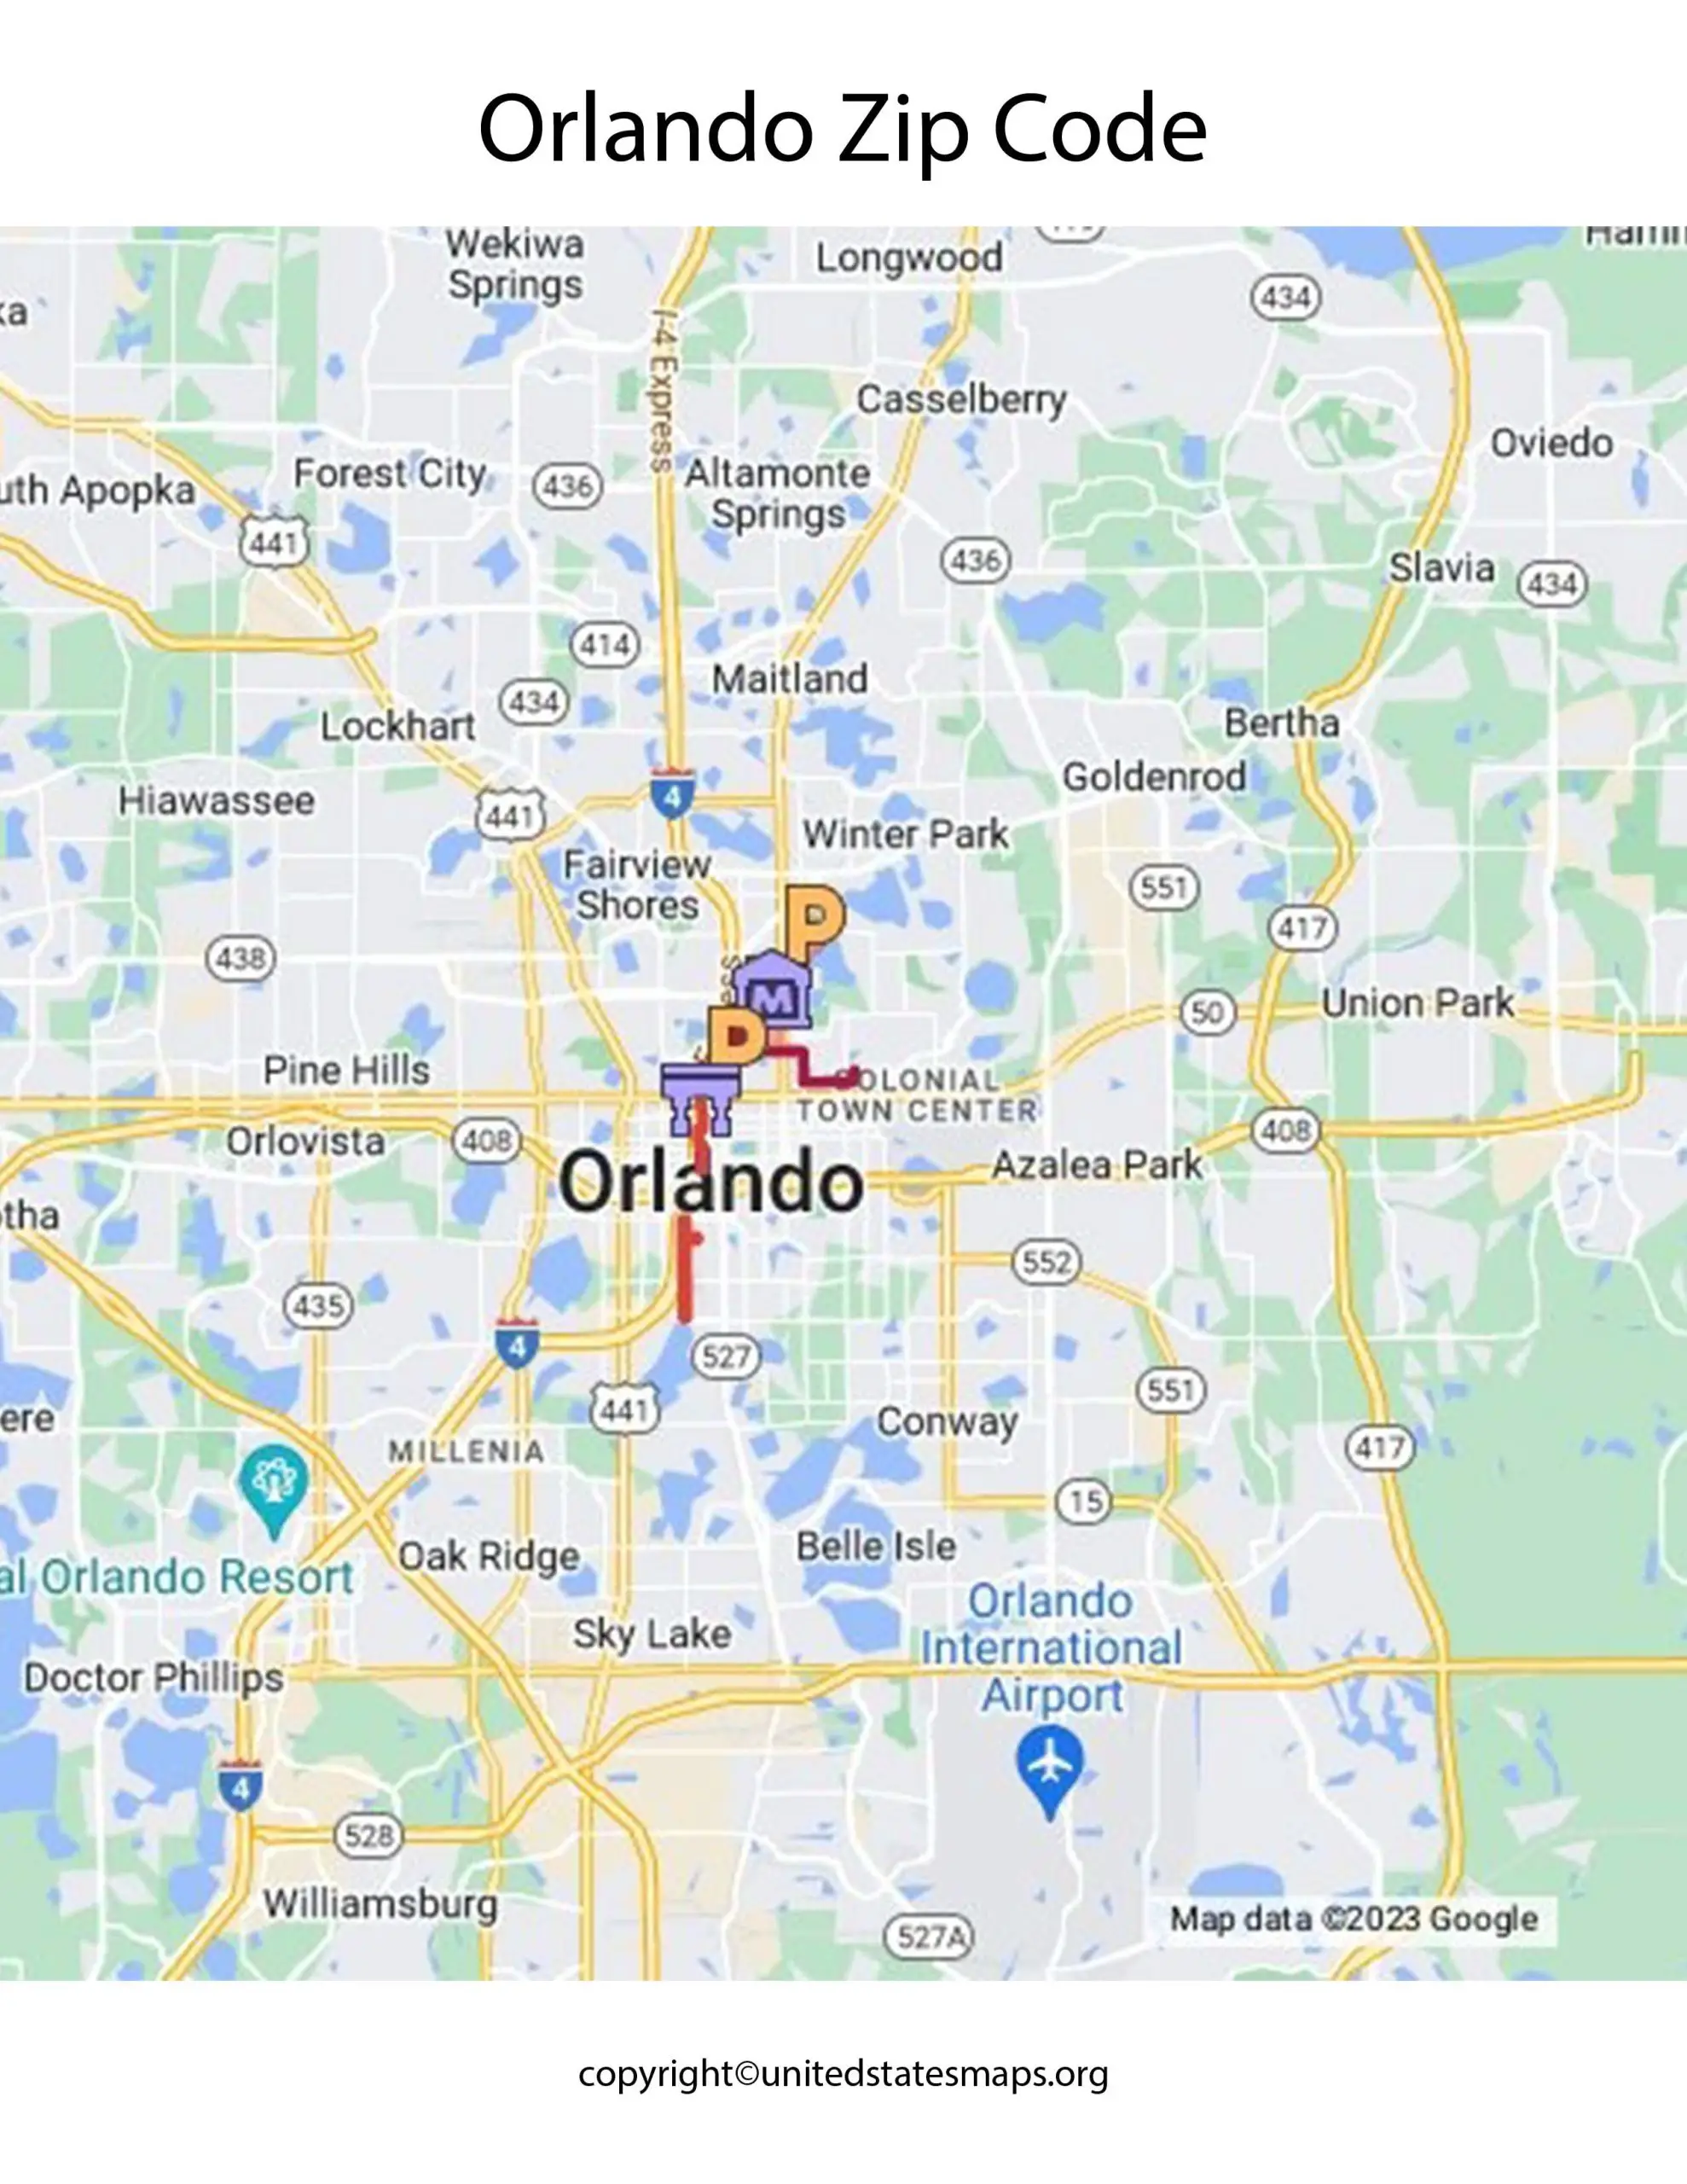 Orlando Zip Code Map Map of Zip Codes in Orlando